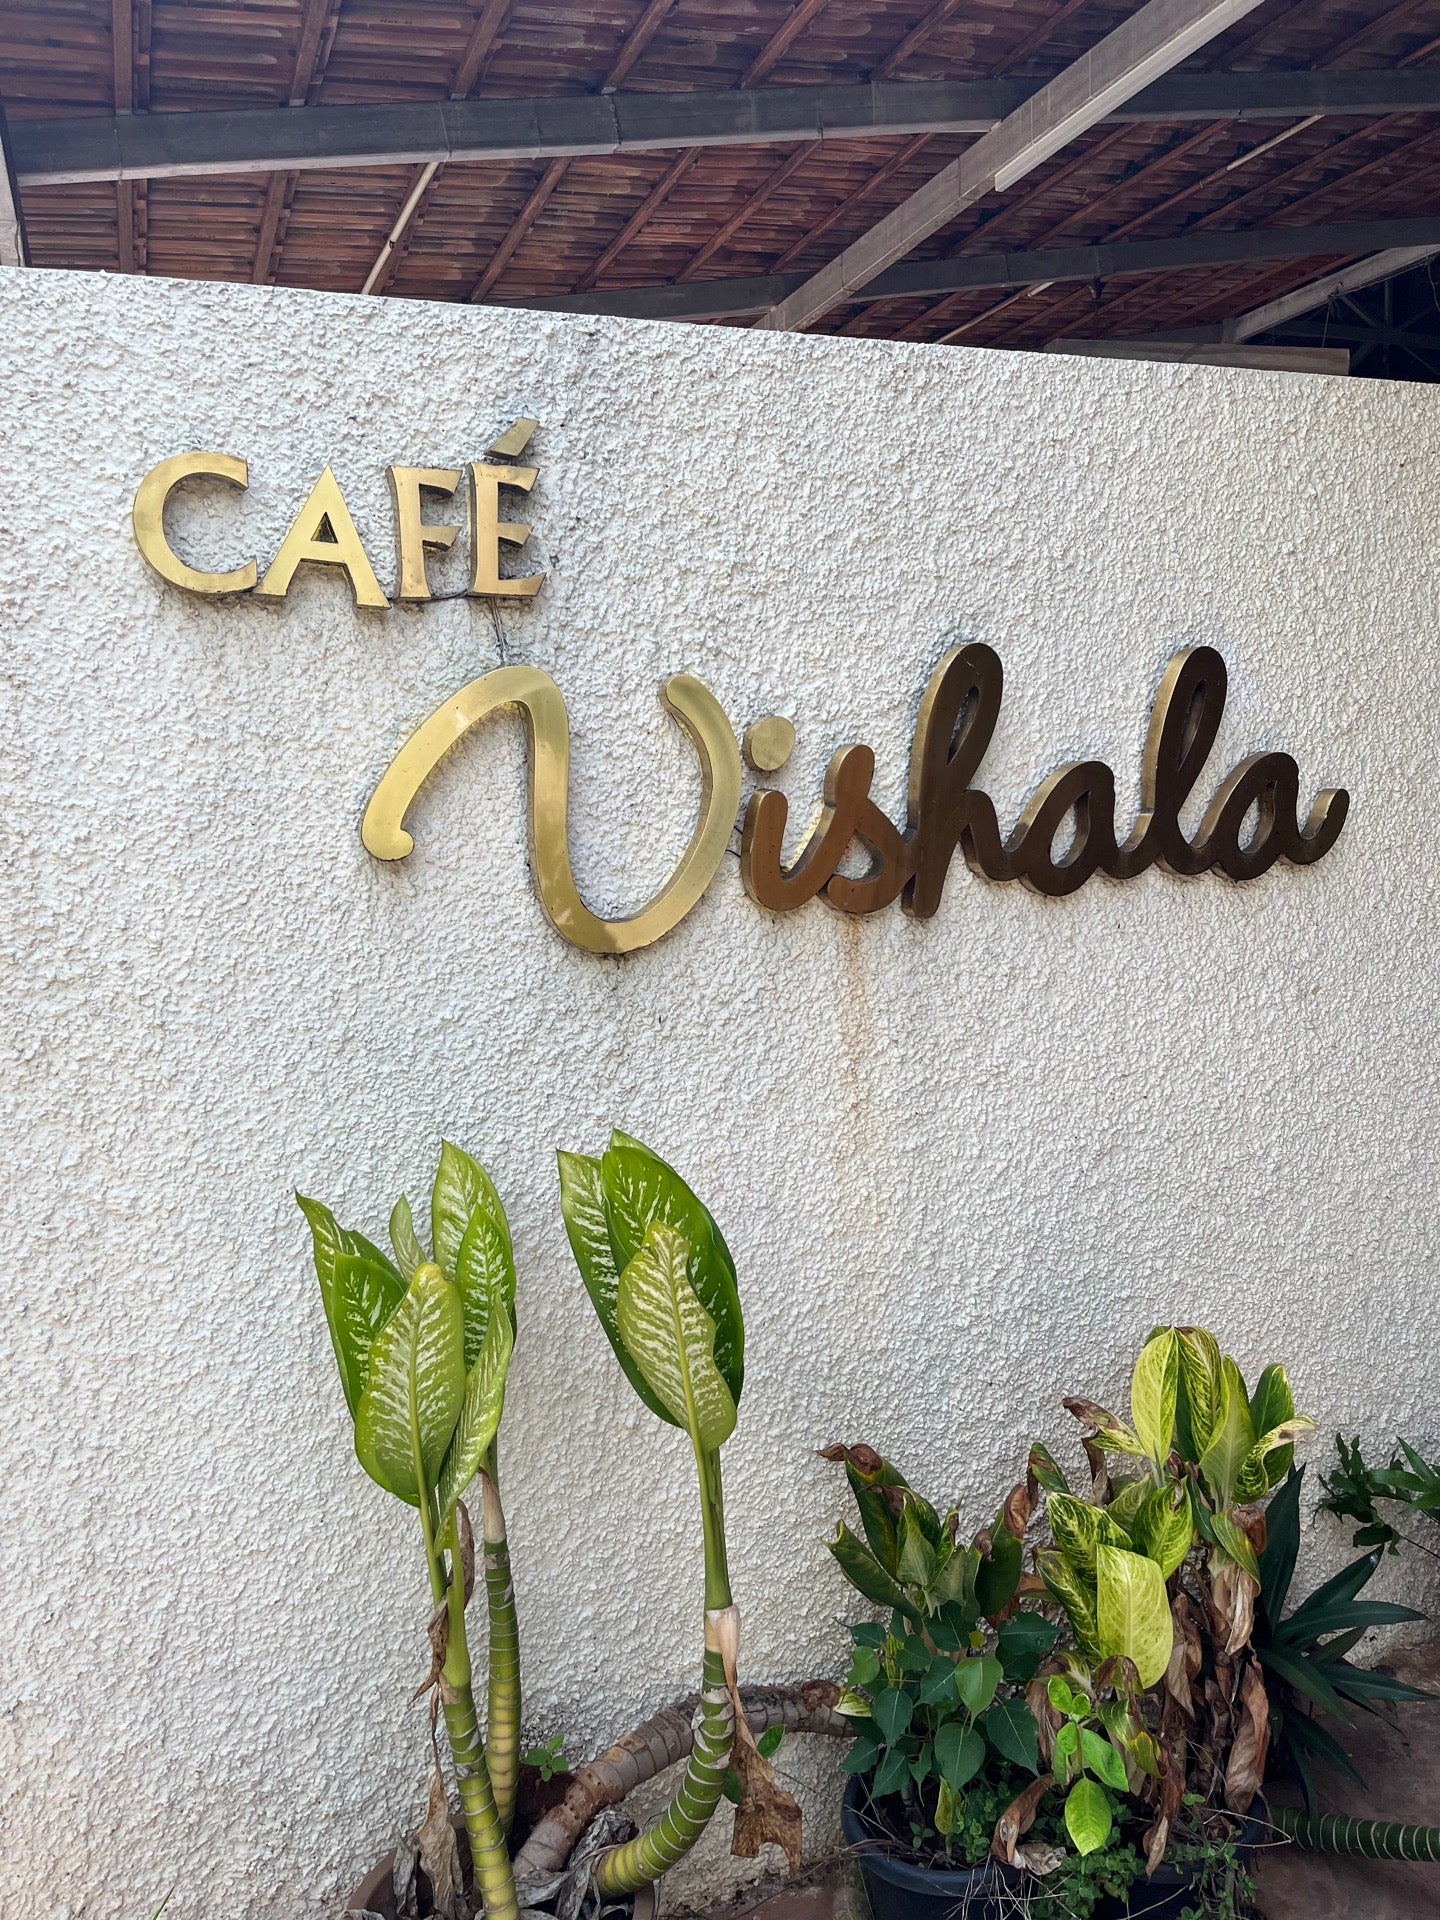 Cafe Vishala